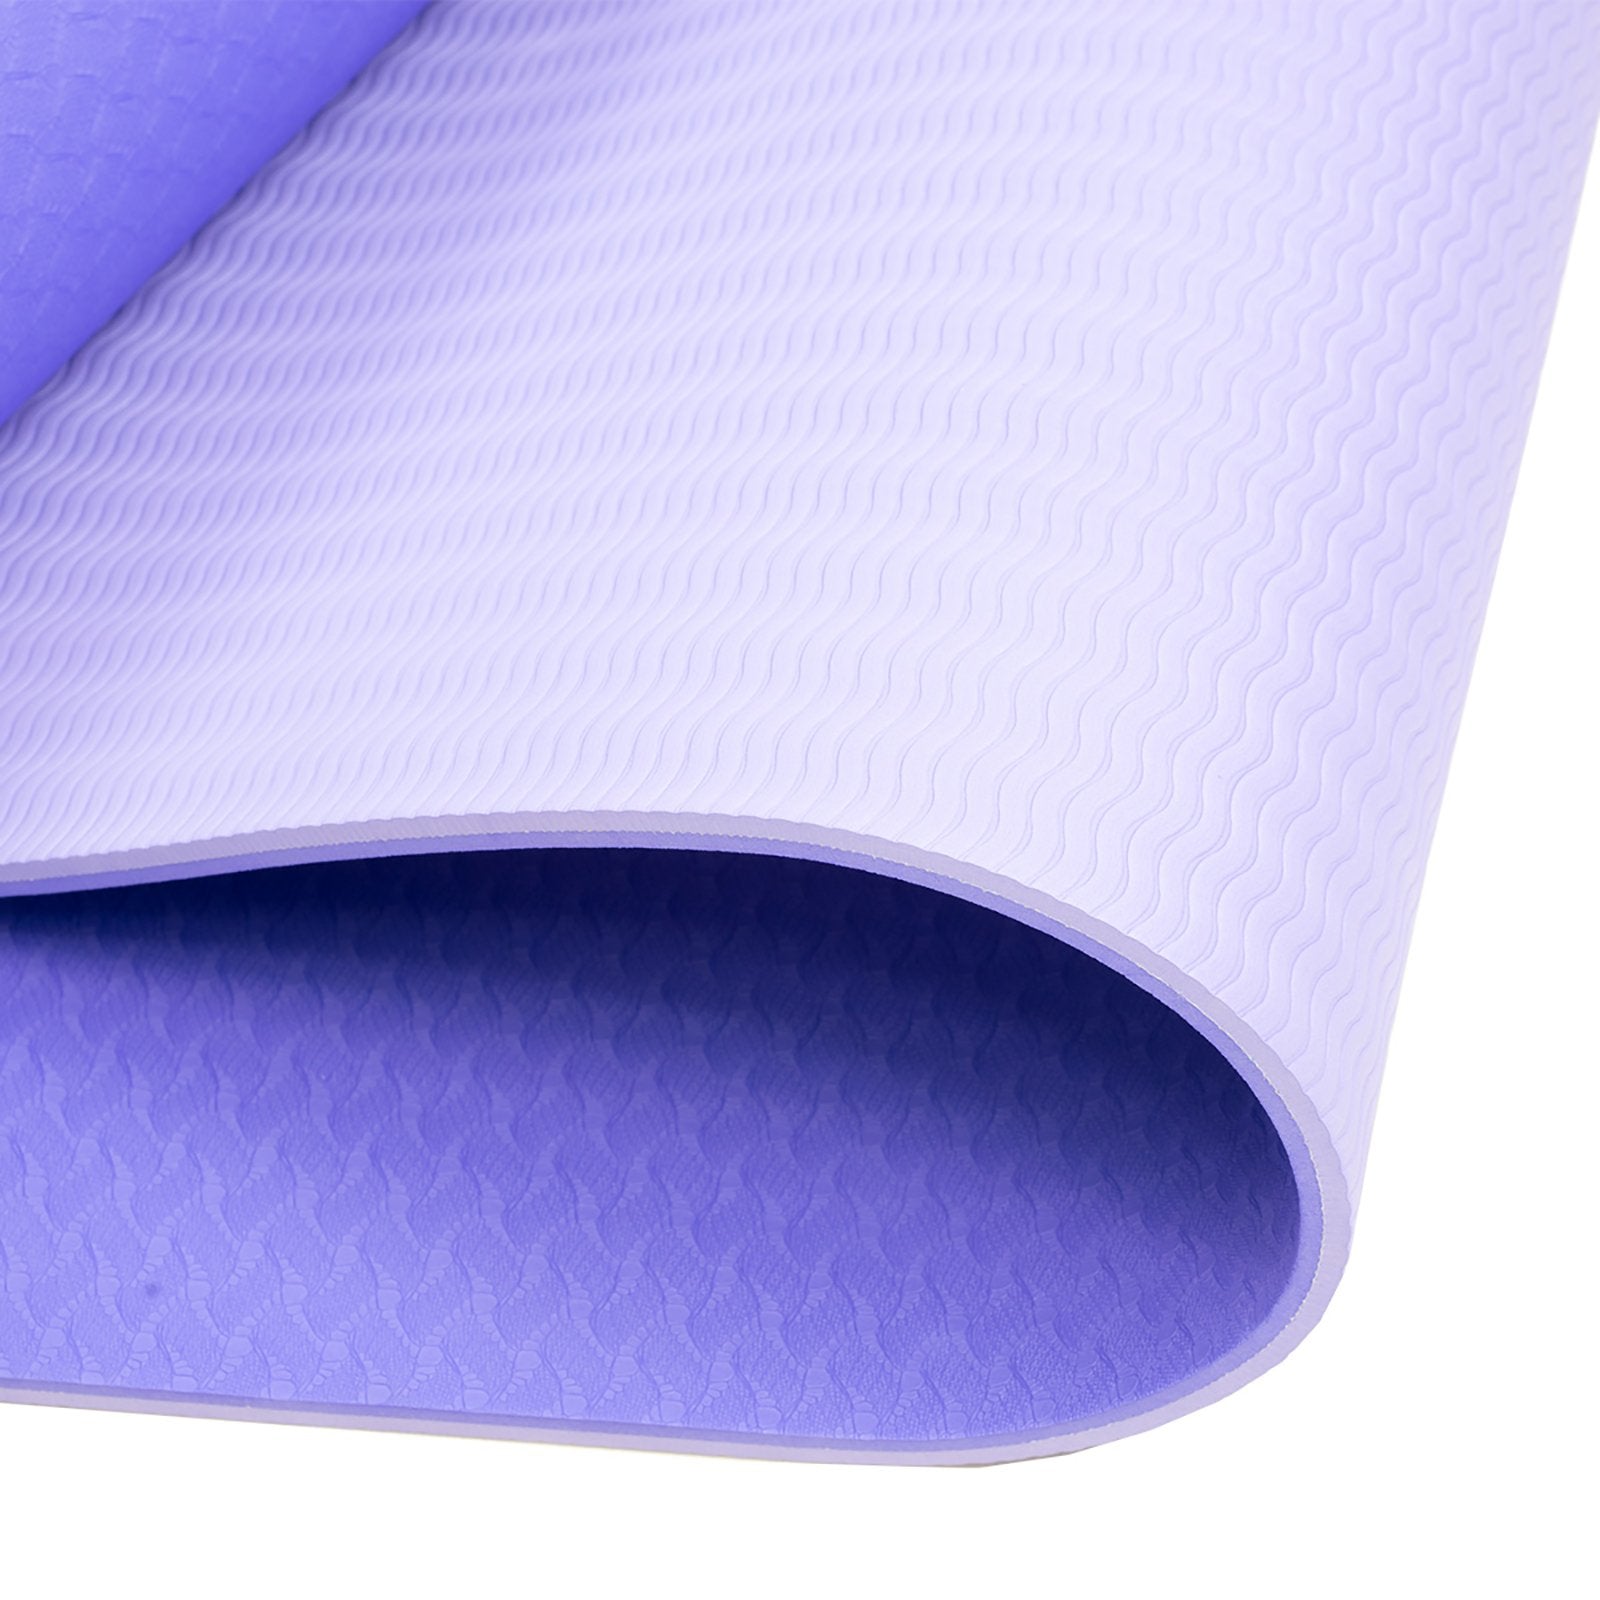 Non-Slip Yoga Mat, The Natural Yoga Mat Surface